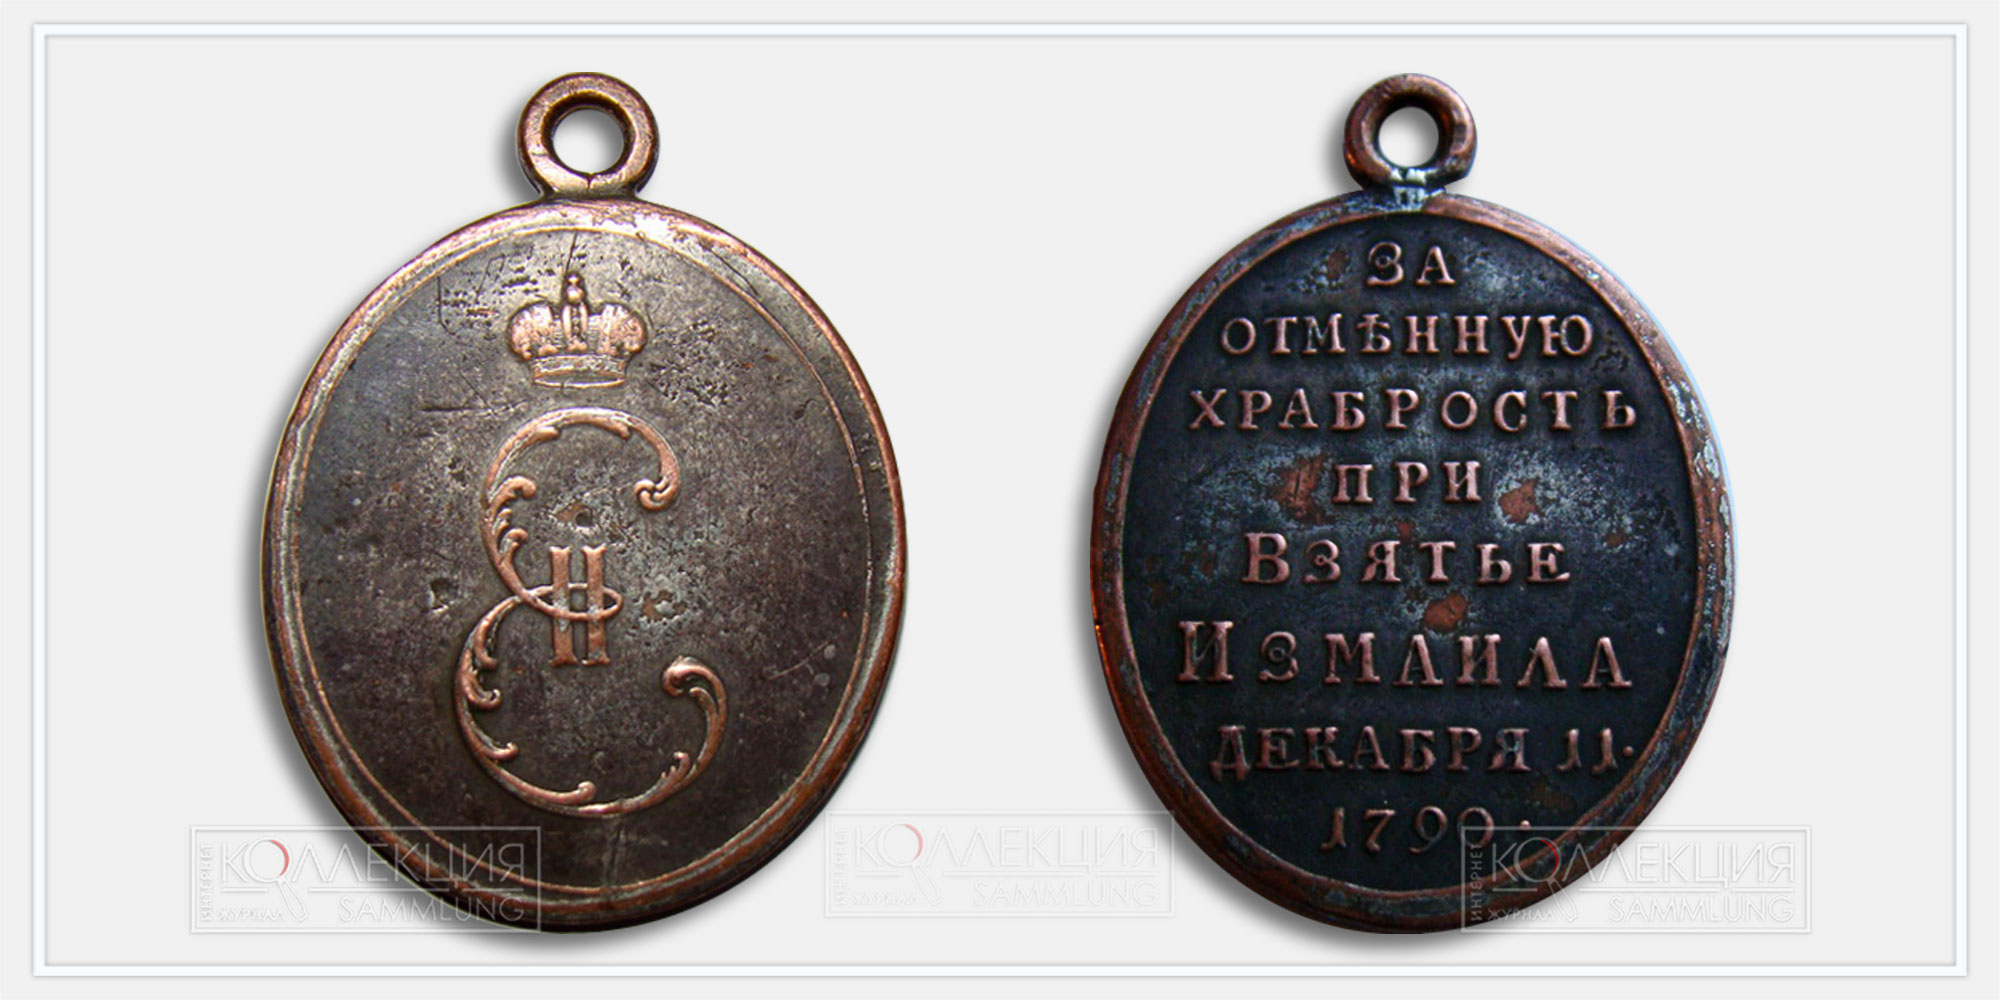 Медаль "За отменную храбрость при взятии Измаила" 1790 (копия)